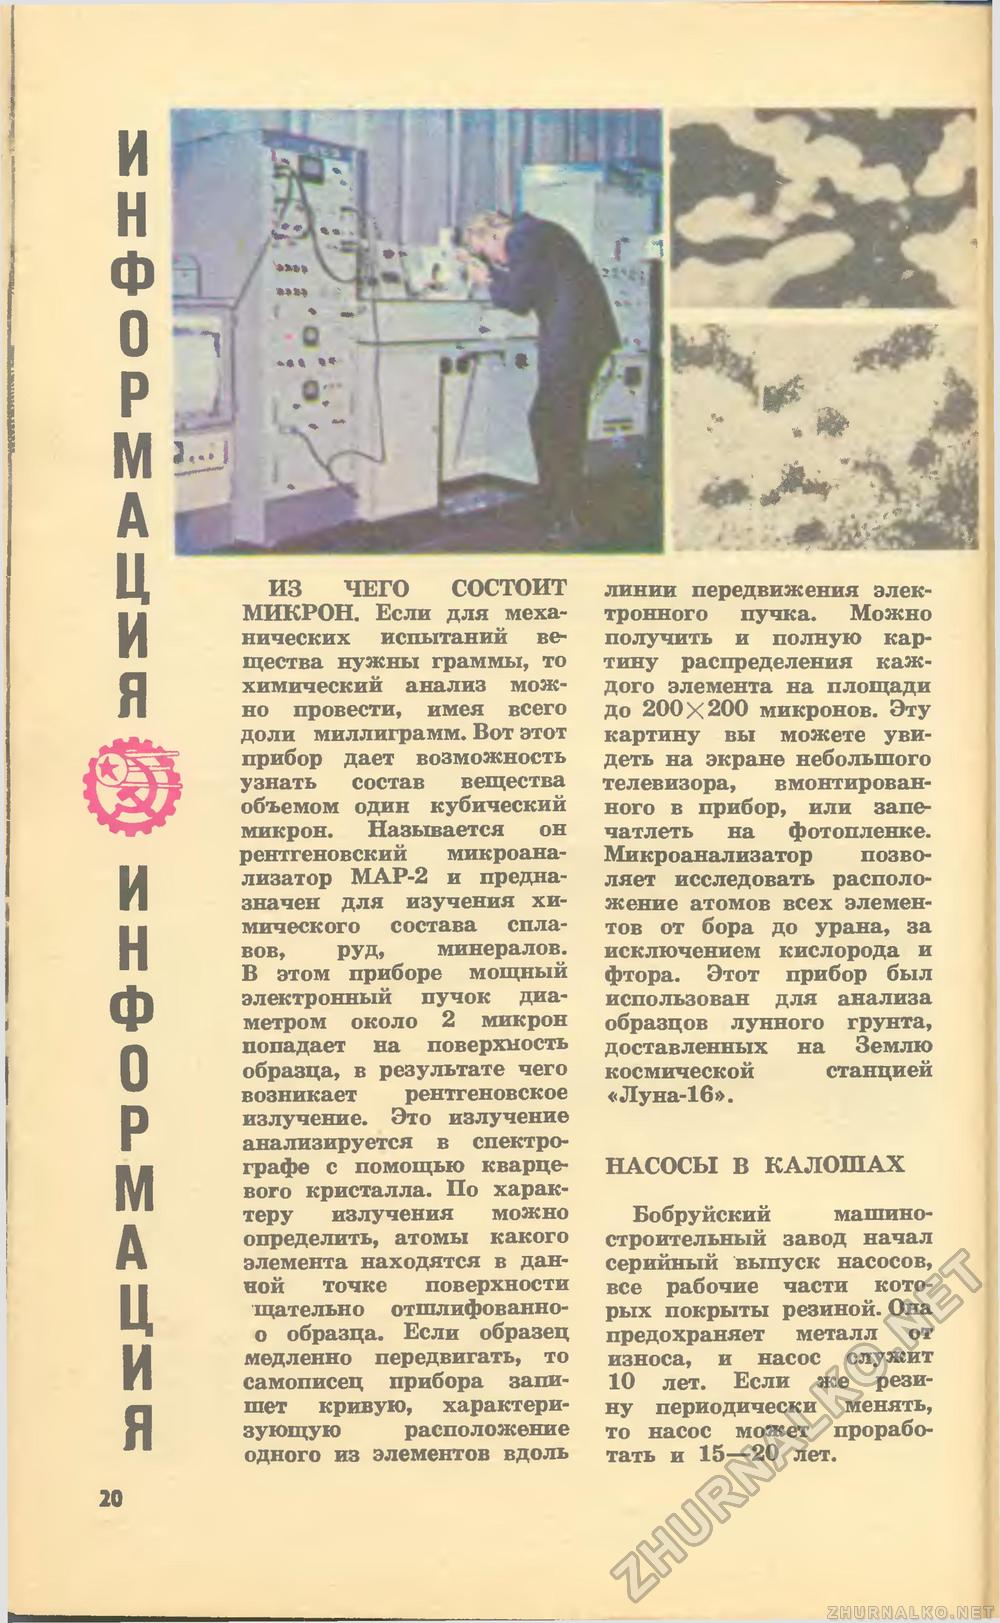   1973-04,  22